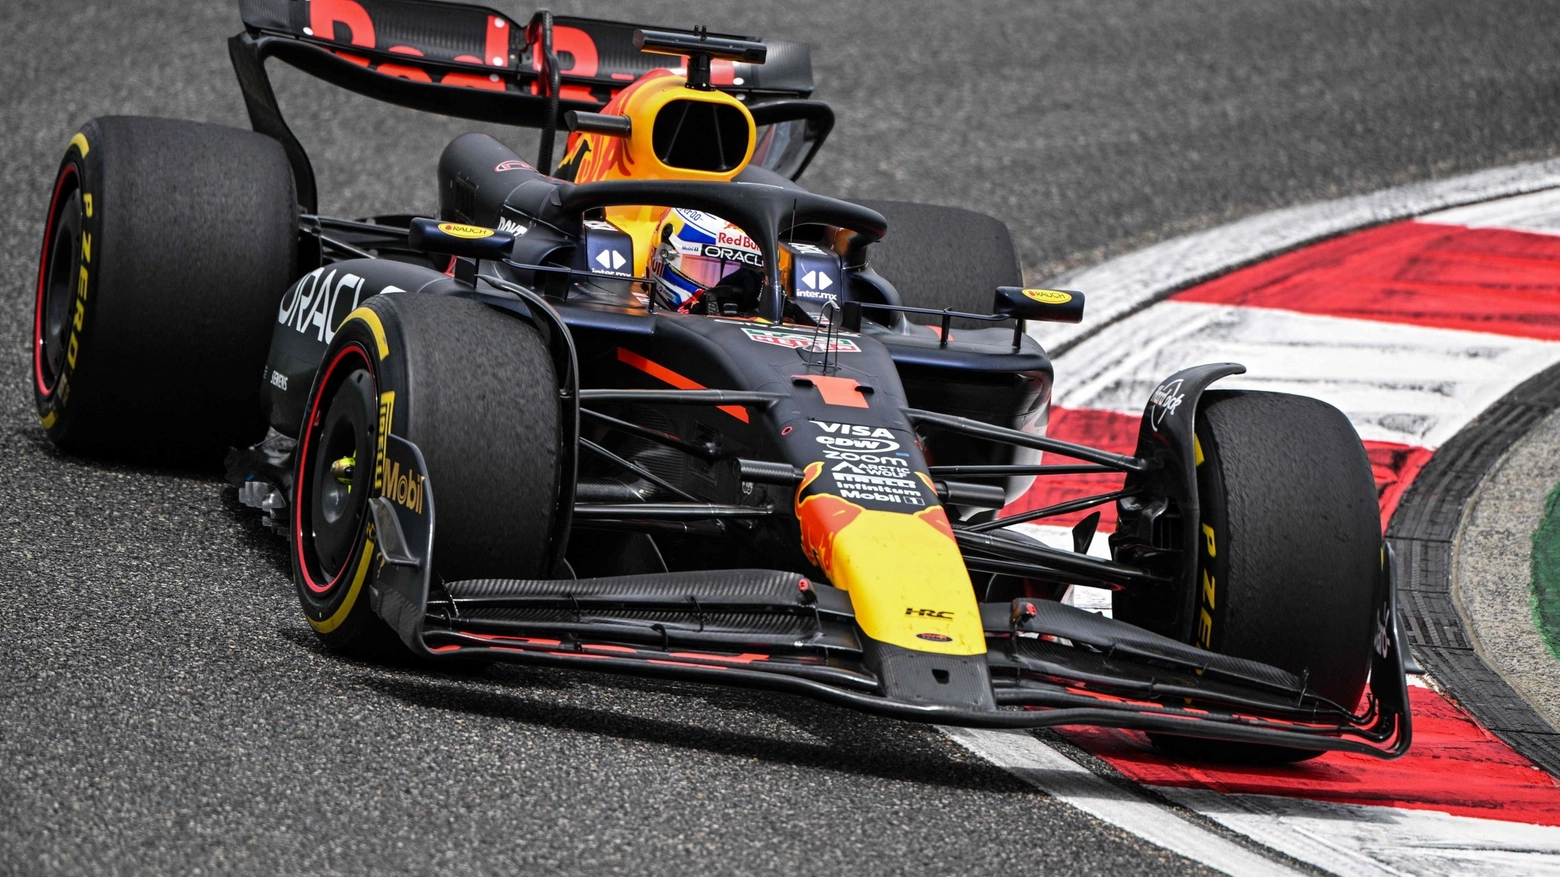 Ennesima dimostrazione di forza del campione del mondo della Red Bull: quarto successo in cinque gare. Carlos Sainz chiude al quinto posto